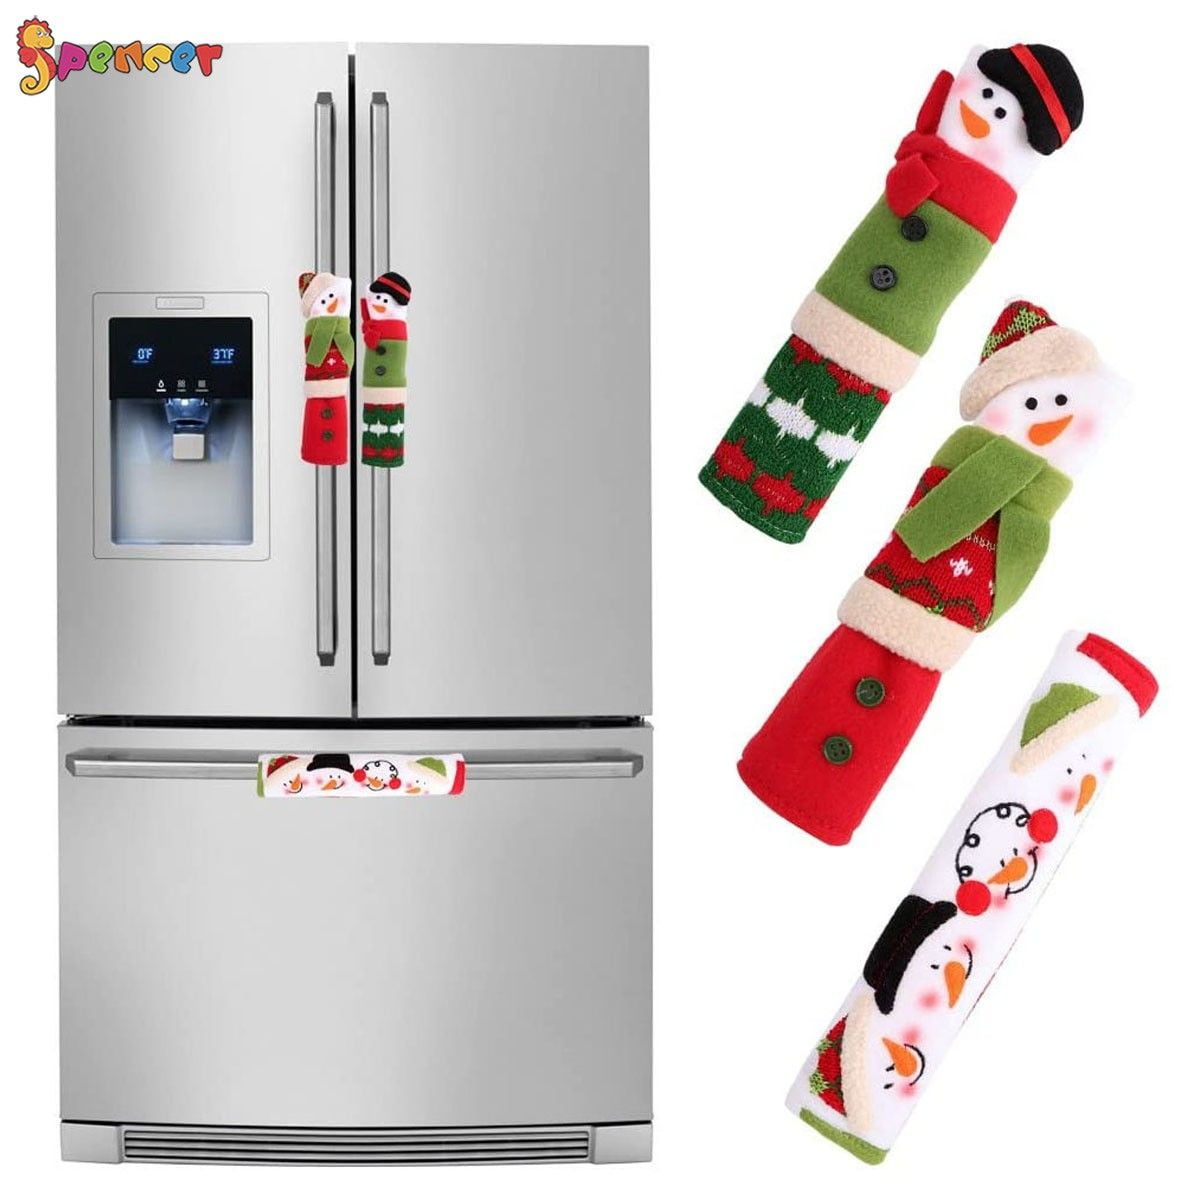 4Pcs Christmas Fridge Microwave Door Handle Cover Snowman Home Decoration US 